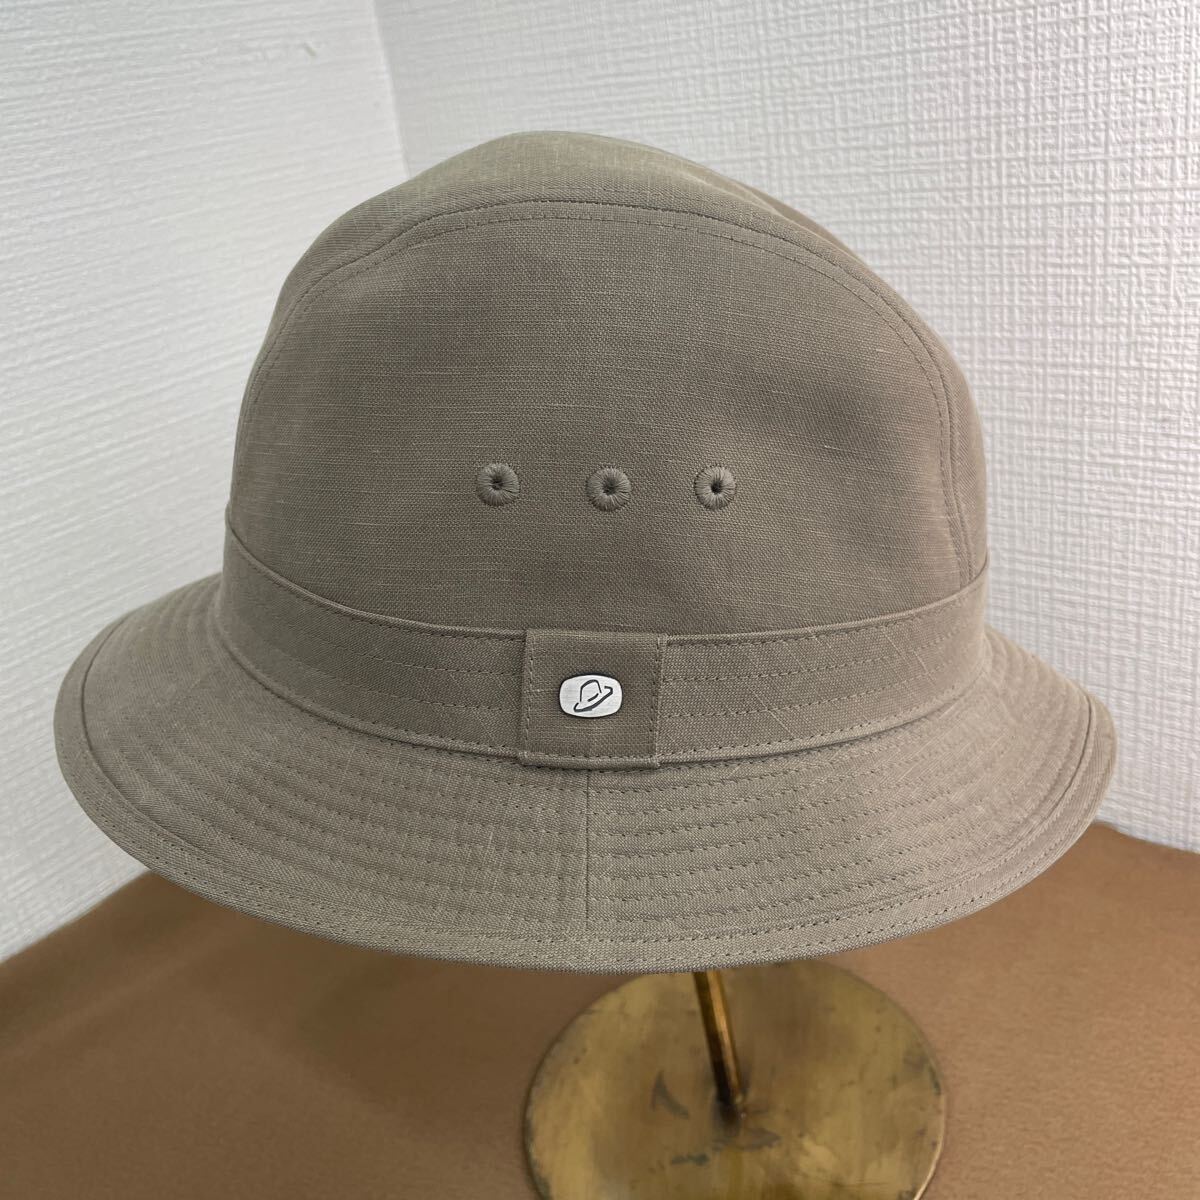 [ не использовался ]Borsalino шляпа boru surrey noBS295 шляпа сделано в Японии тонн cell /linen57cm casual уличный альпинизм 